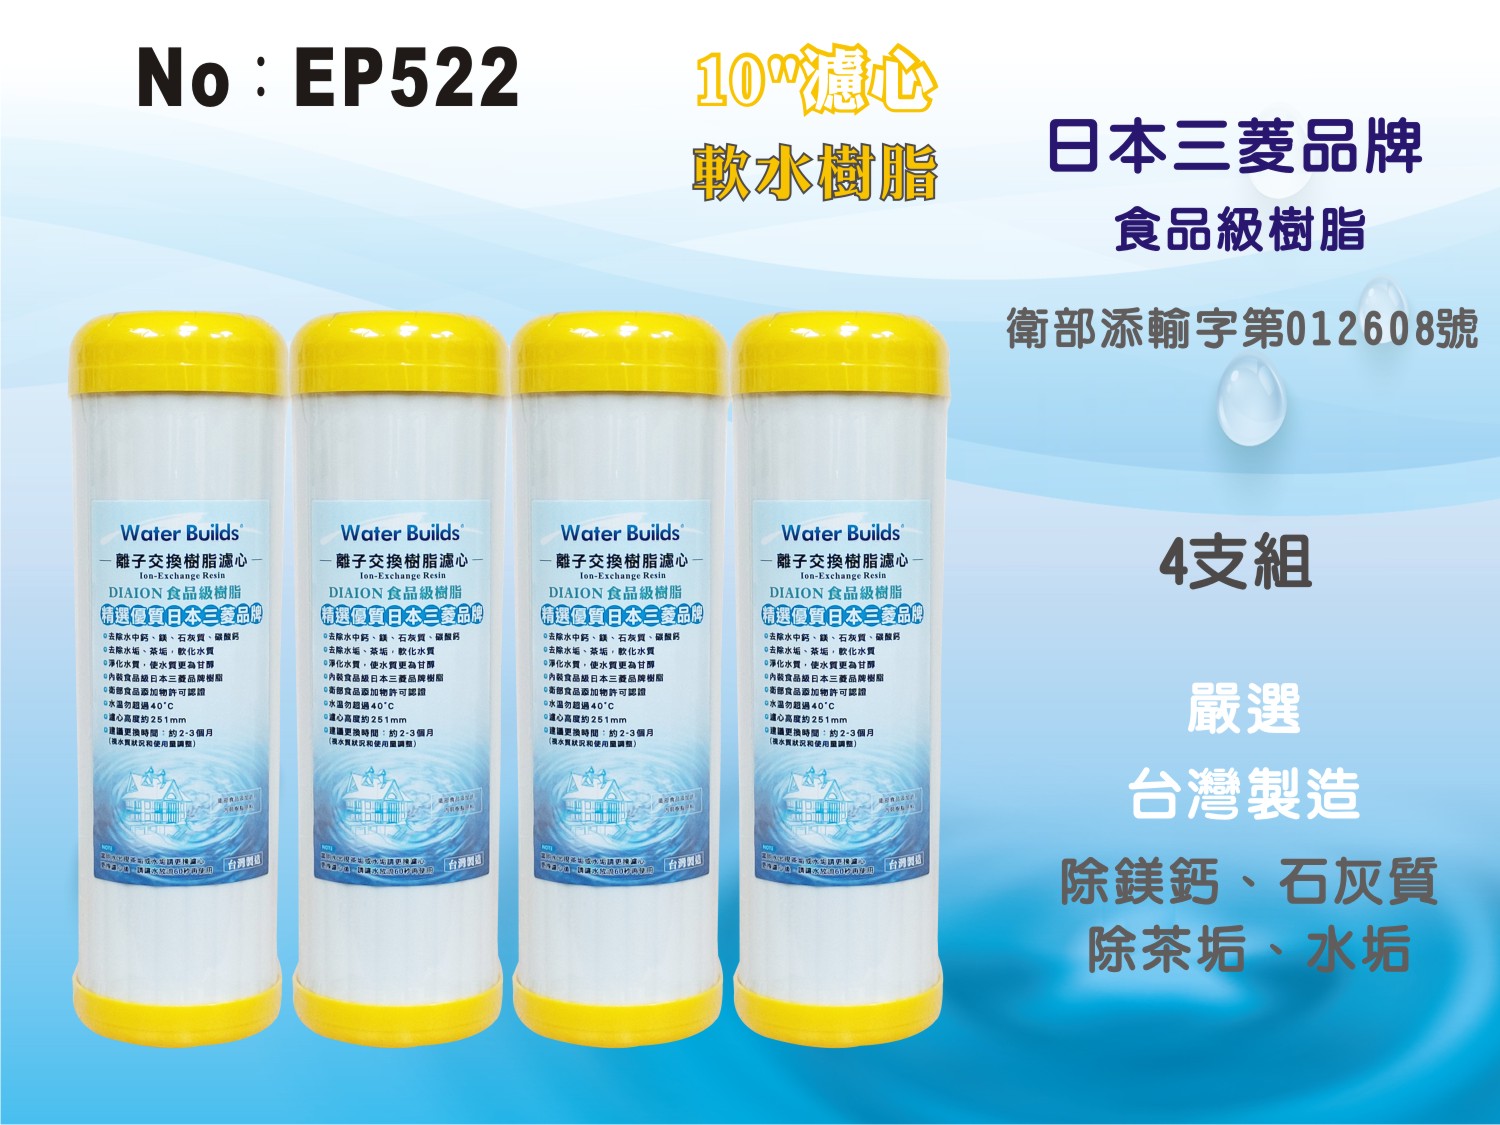 【龍門淨水】 10吋濾心 UDF 日本三菱品牌樹脂 食品級離子交換樹脂 陽離子 軟水 除茶垢 淨水器 4支組(EP522)